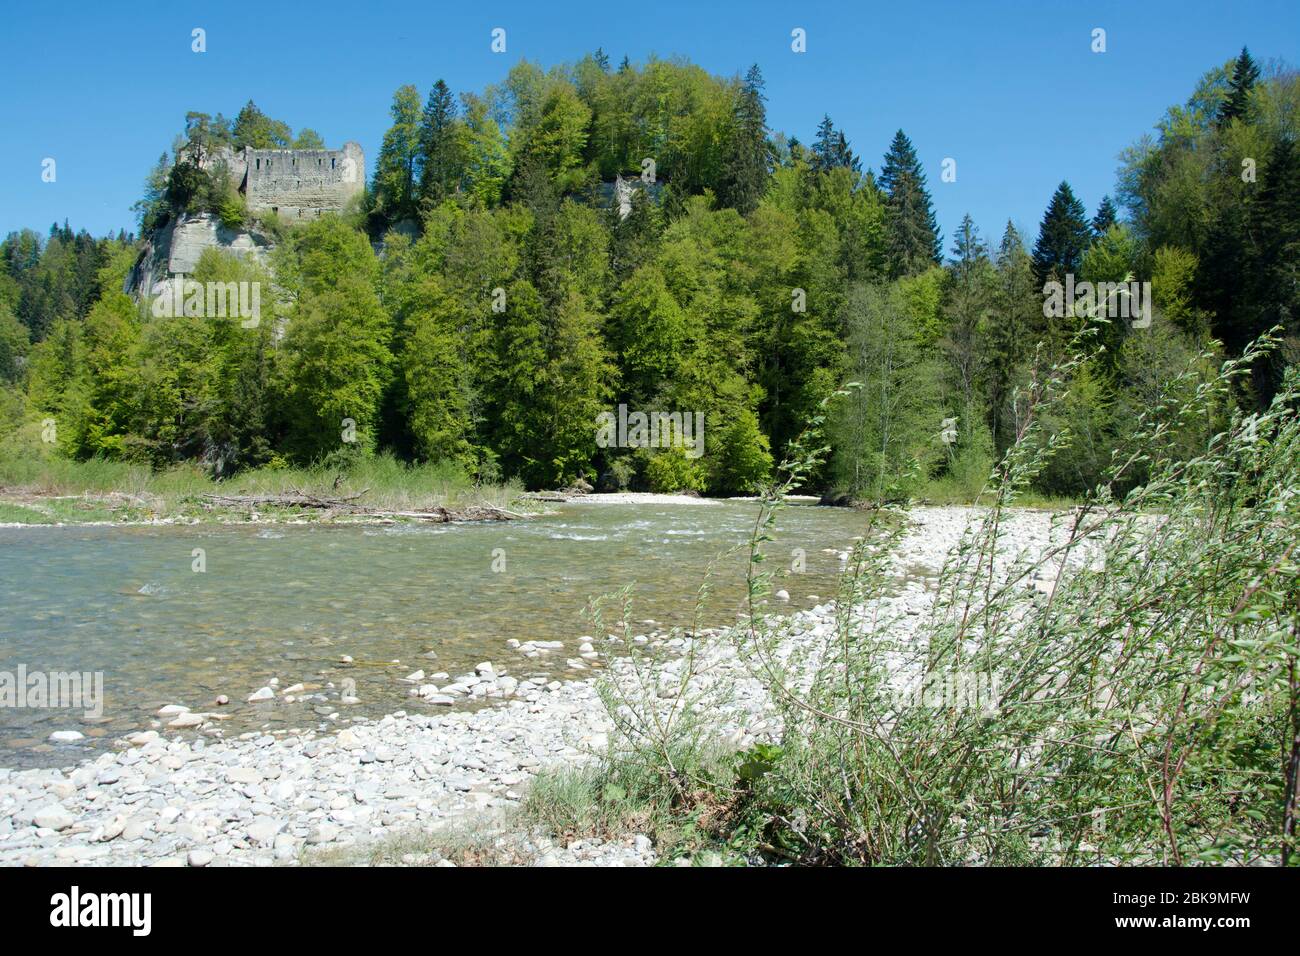 Einer der wenigen unberührten Schweizer Flüsse, die Sense, zwischen Guggisberg und Schwarzenburg Stock Photo